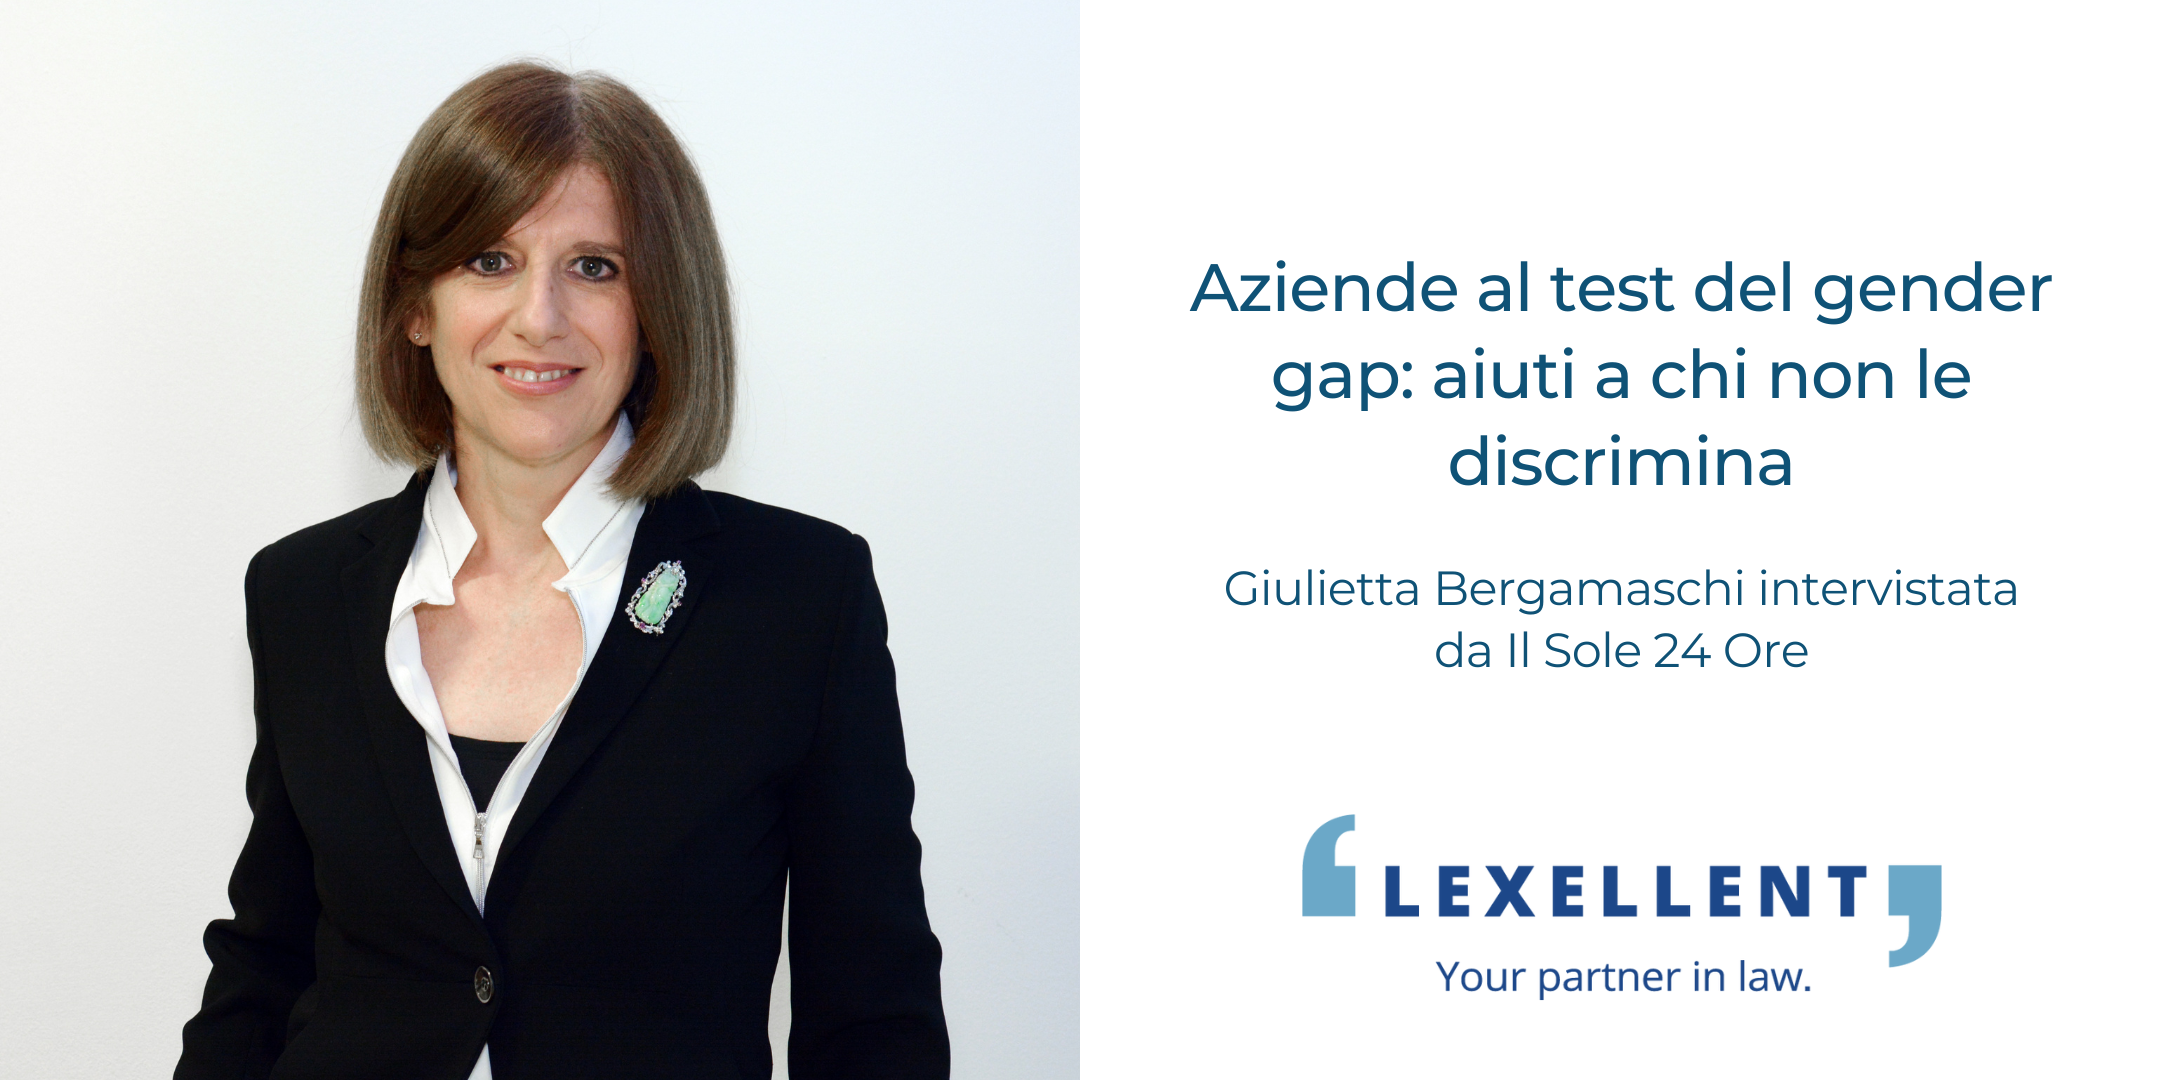 “Aziende al test del gender gap: aiuti a chi non discrimina”, Giulietta Bergamaschi intervistata da Il Sole 24 Ore